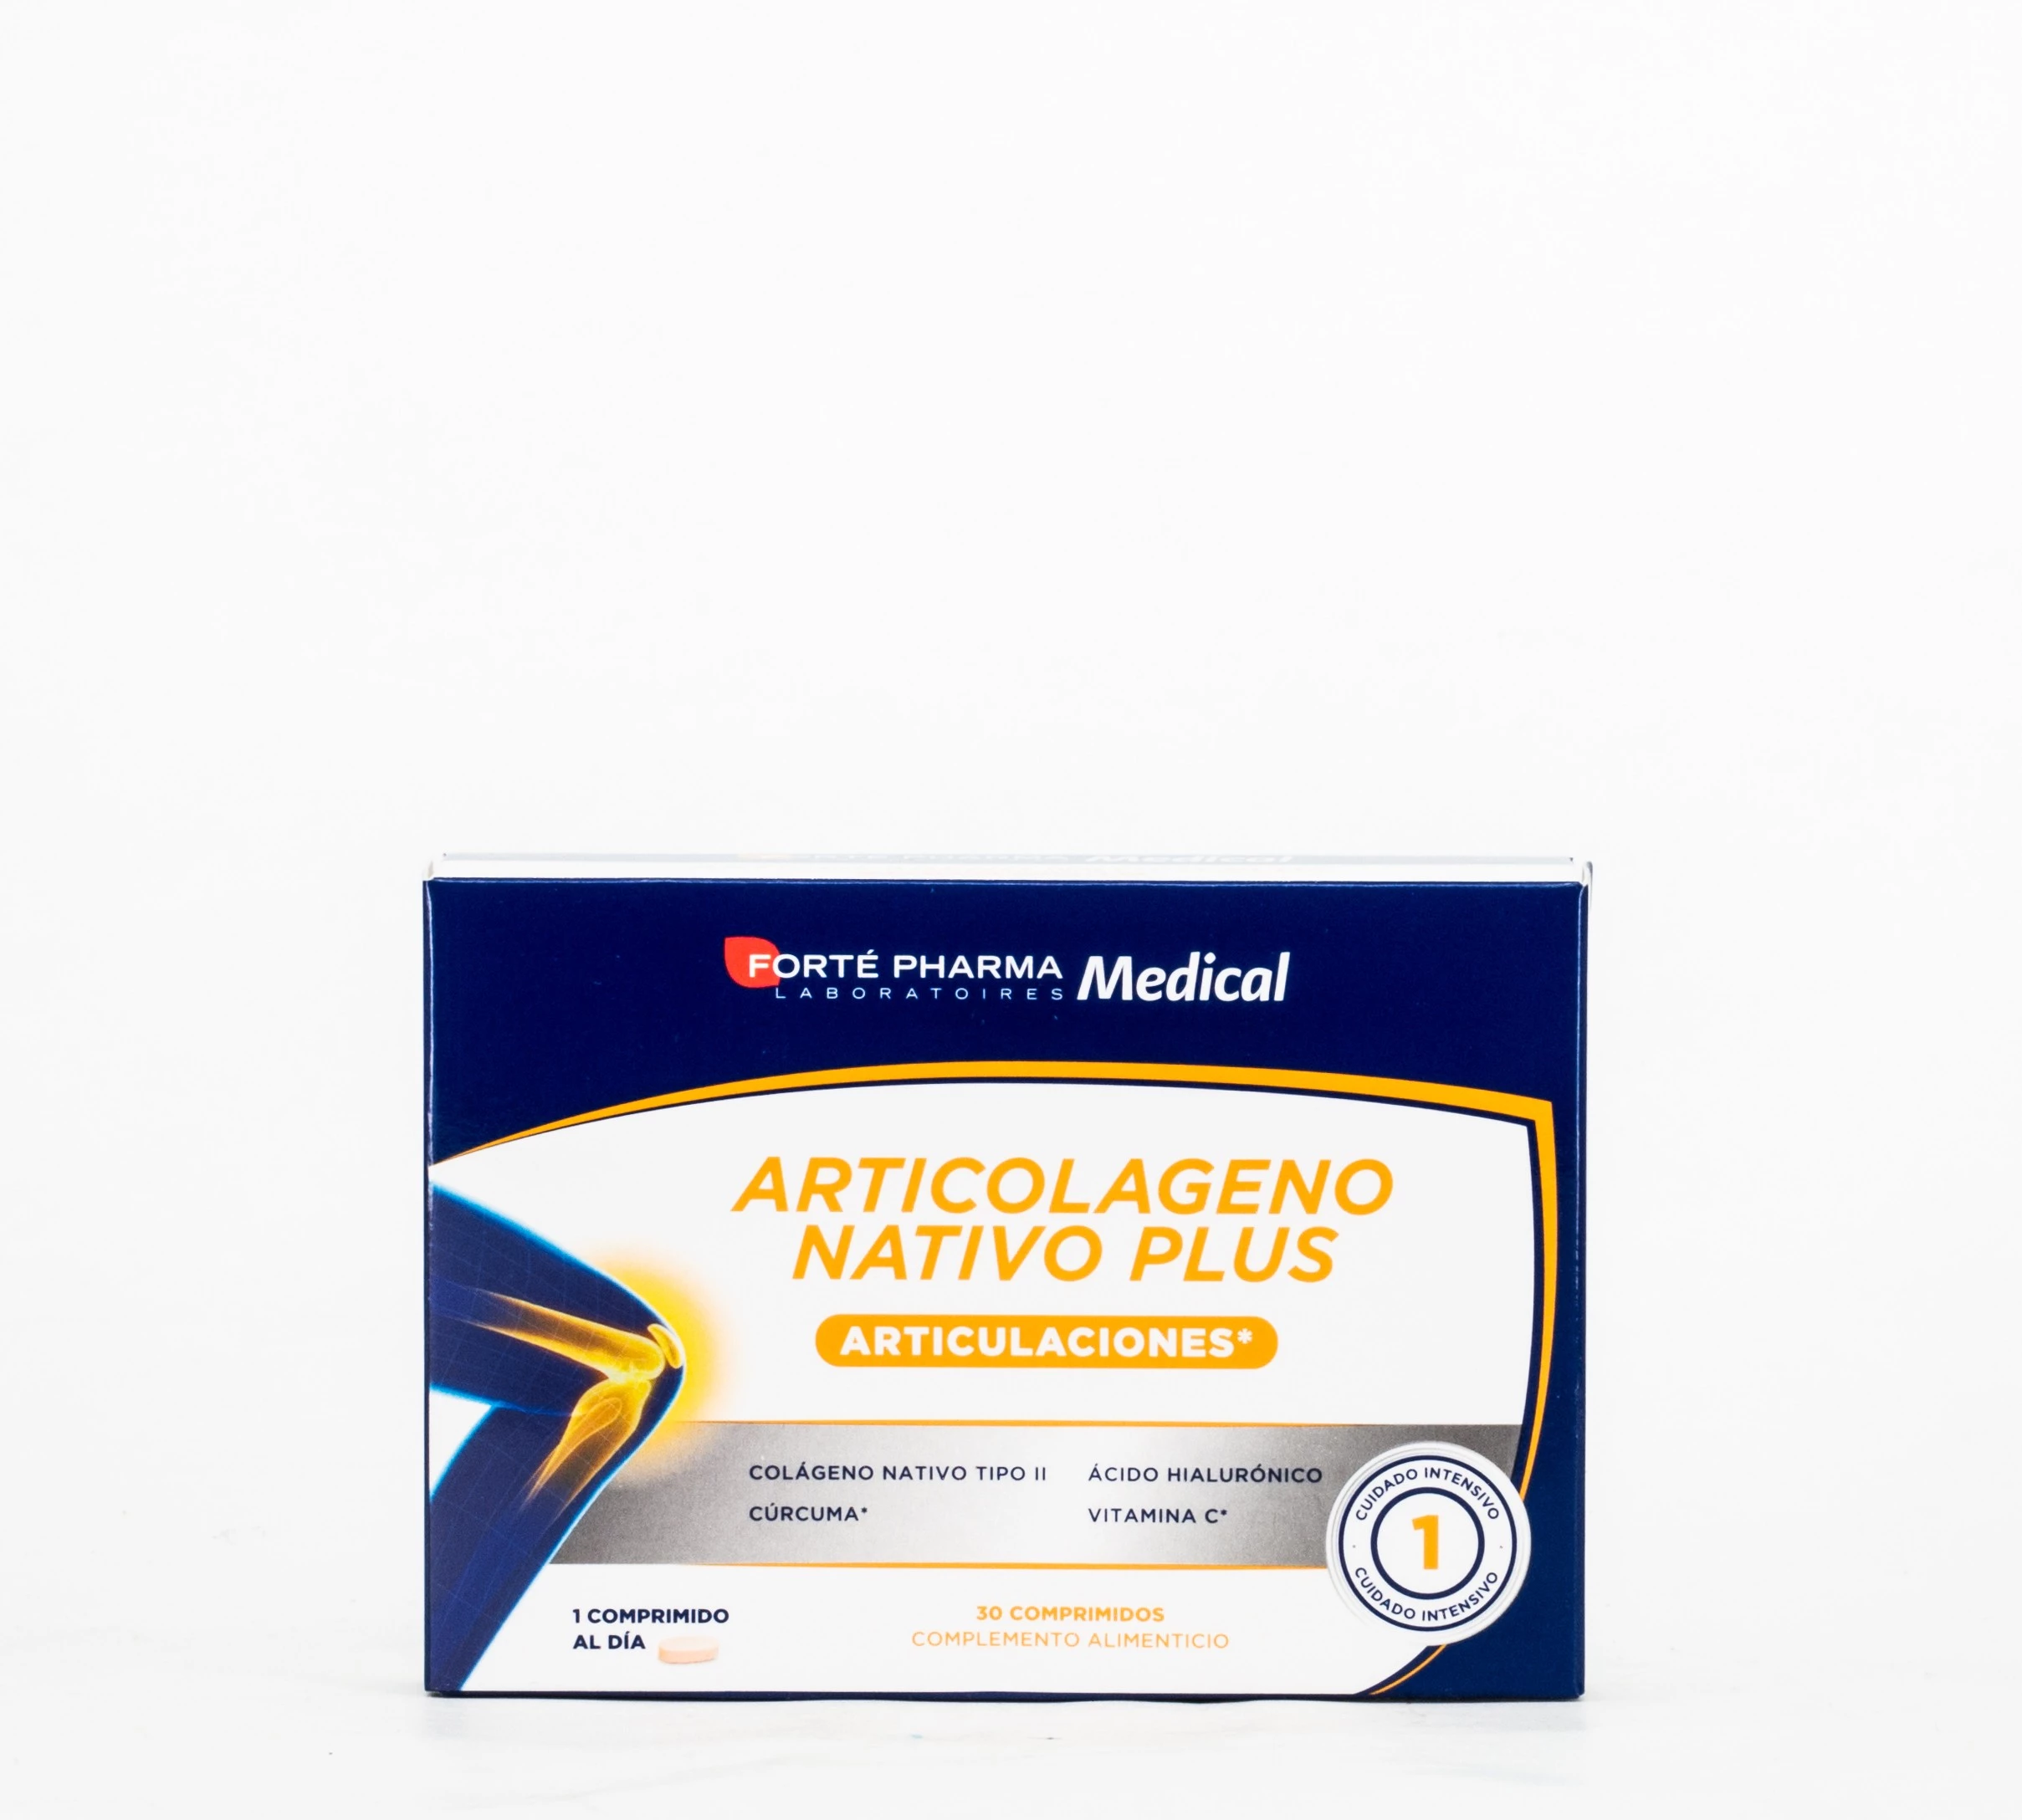 Articolageno Nativo Plus, 30 comprimidos.